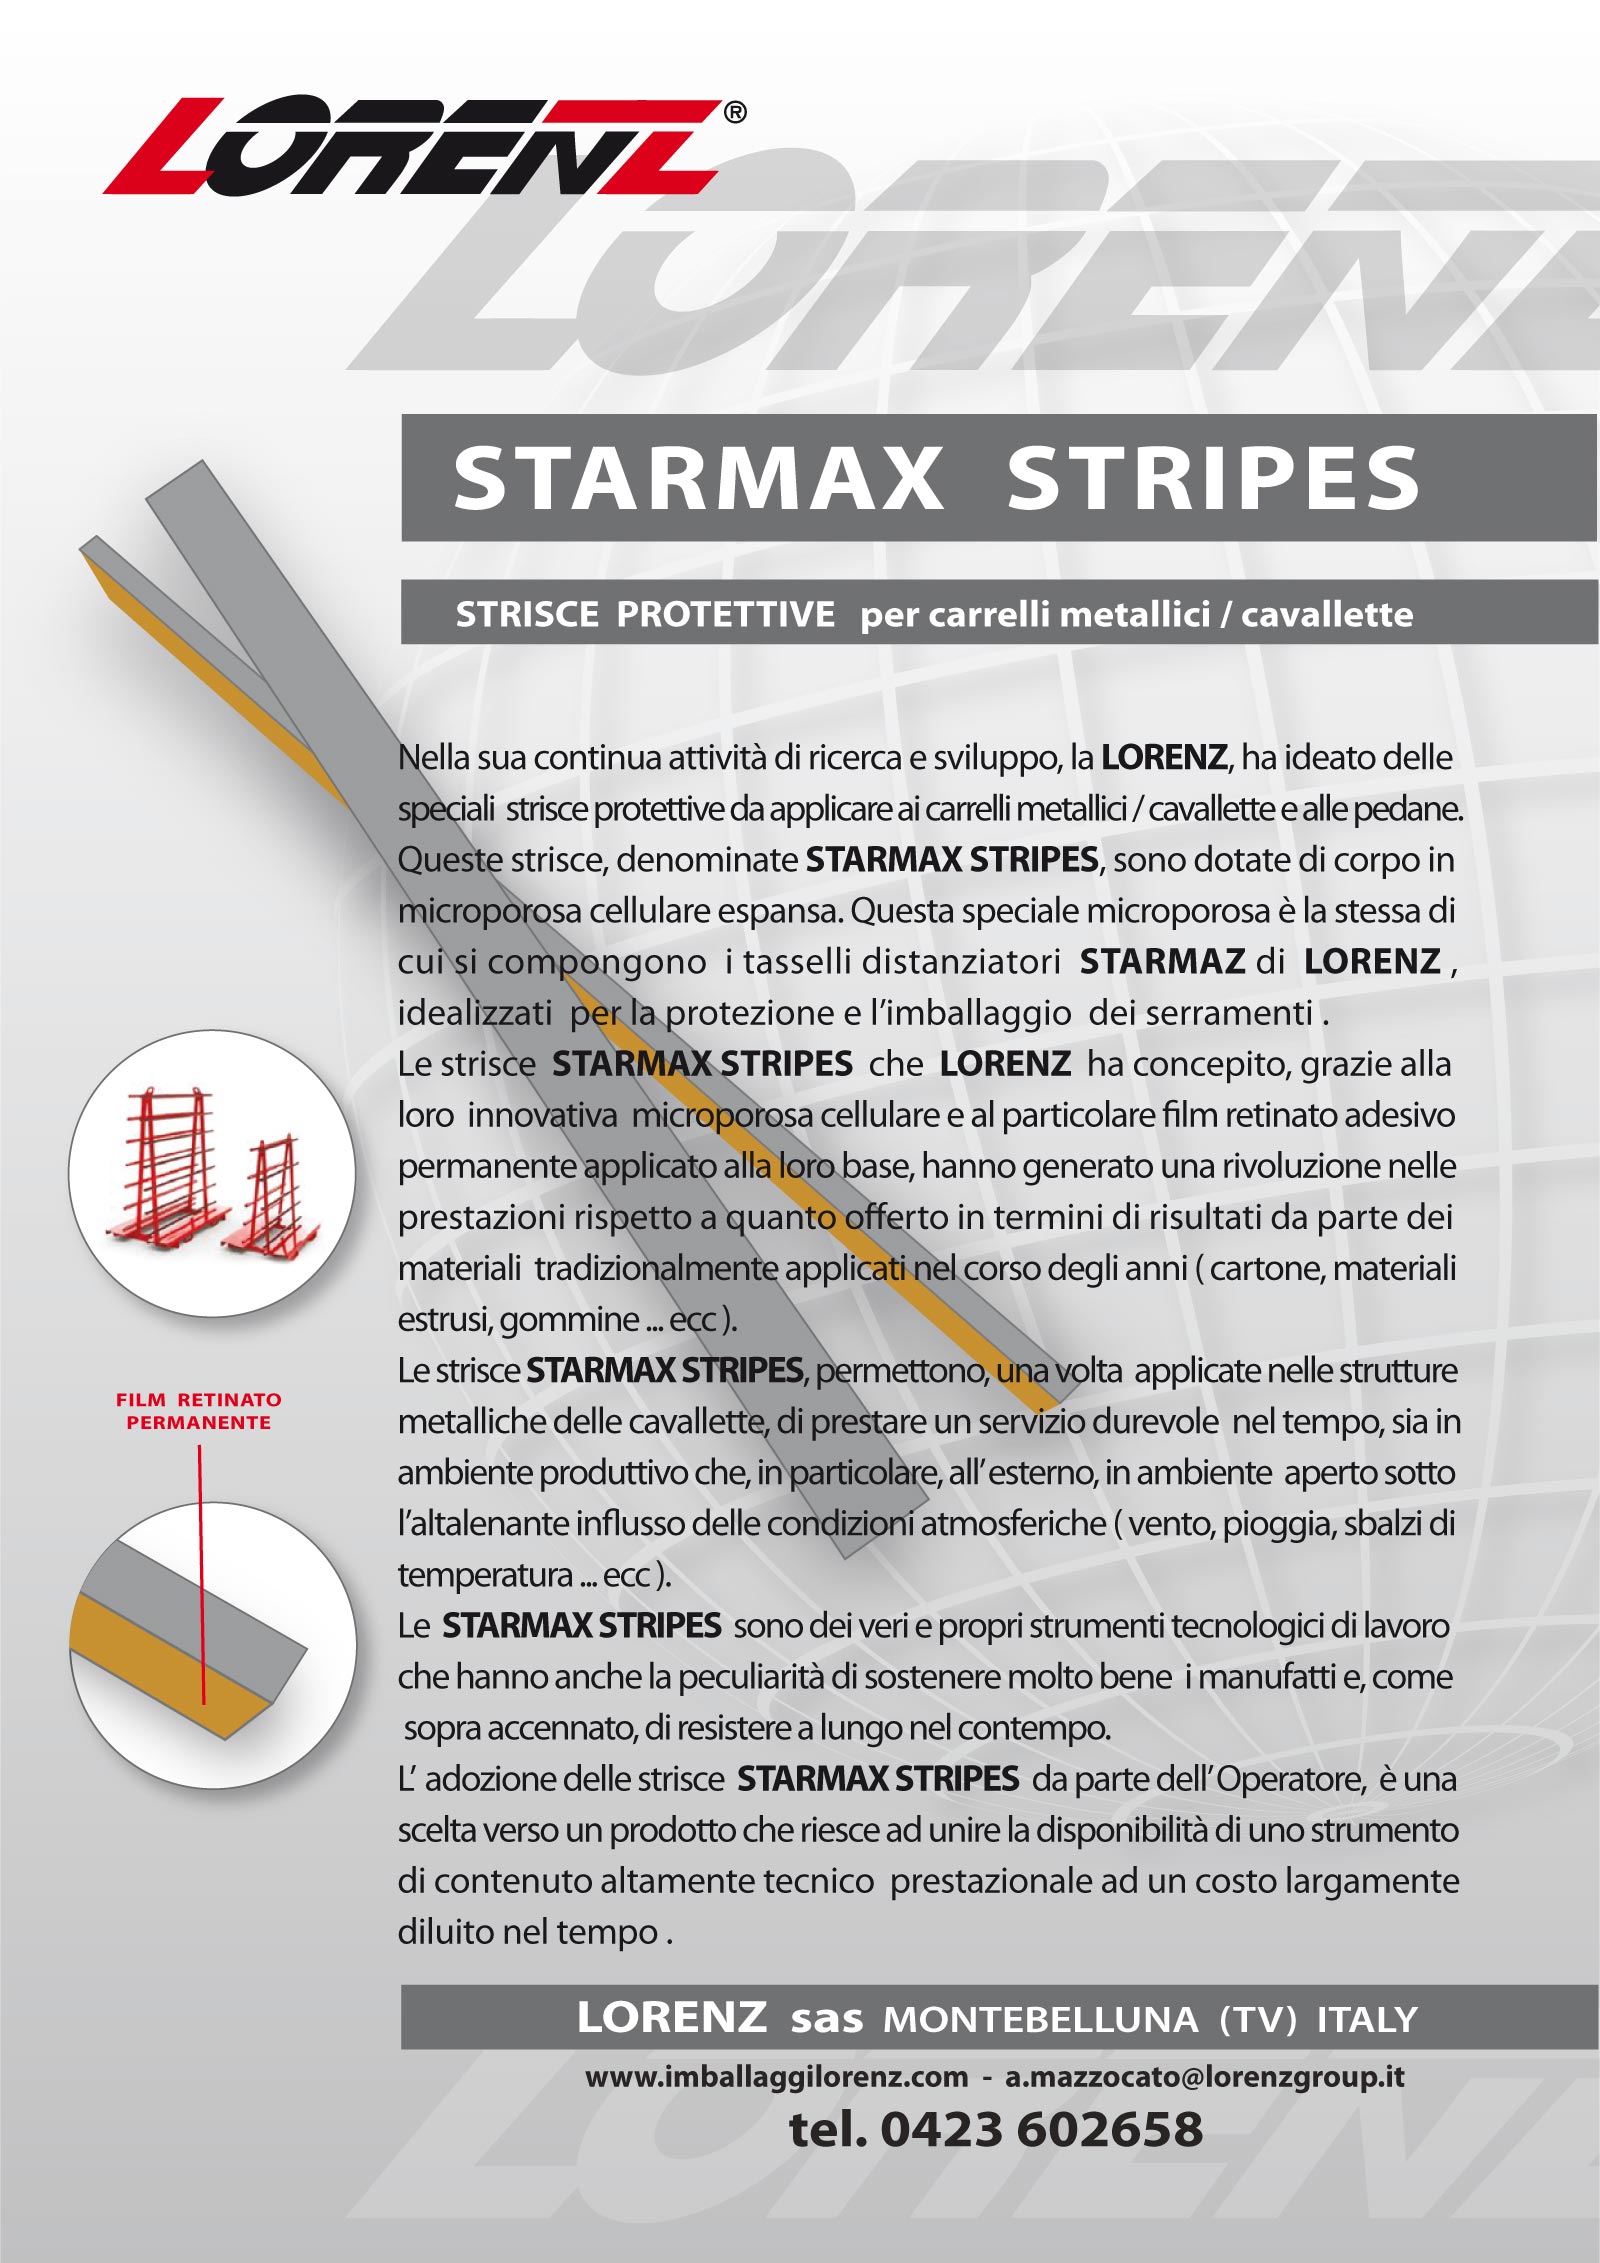 starmax stripes strisce protettive informativa